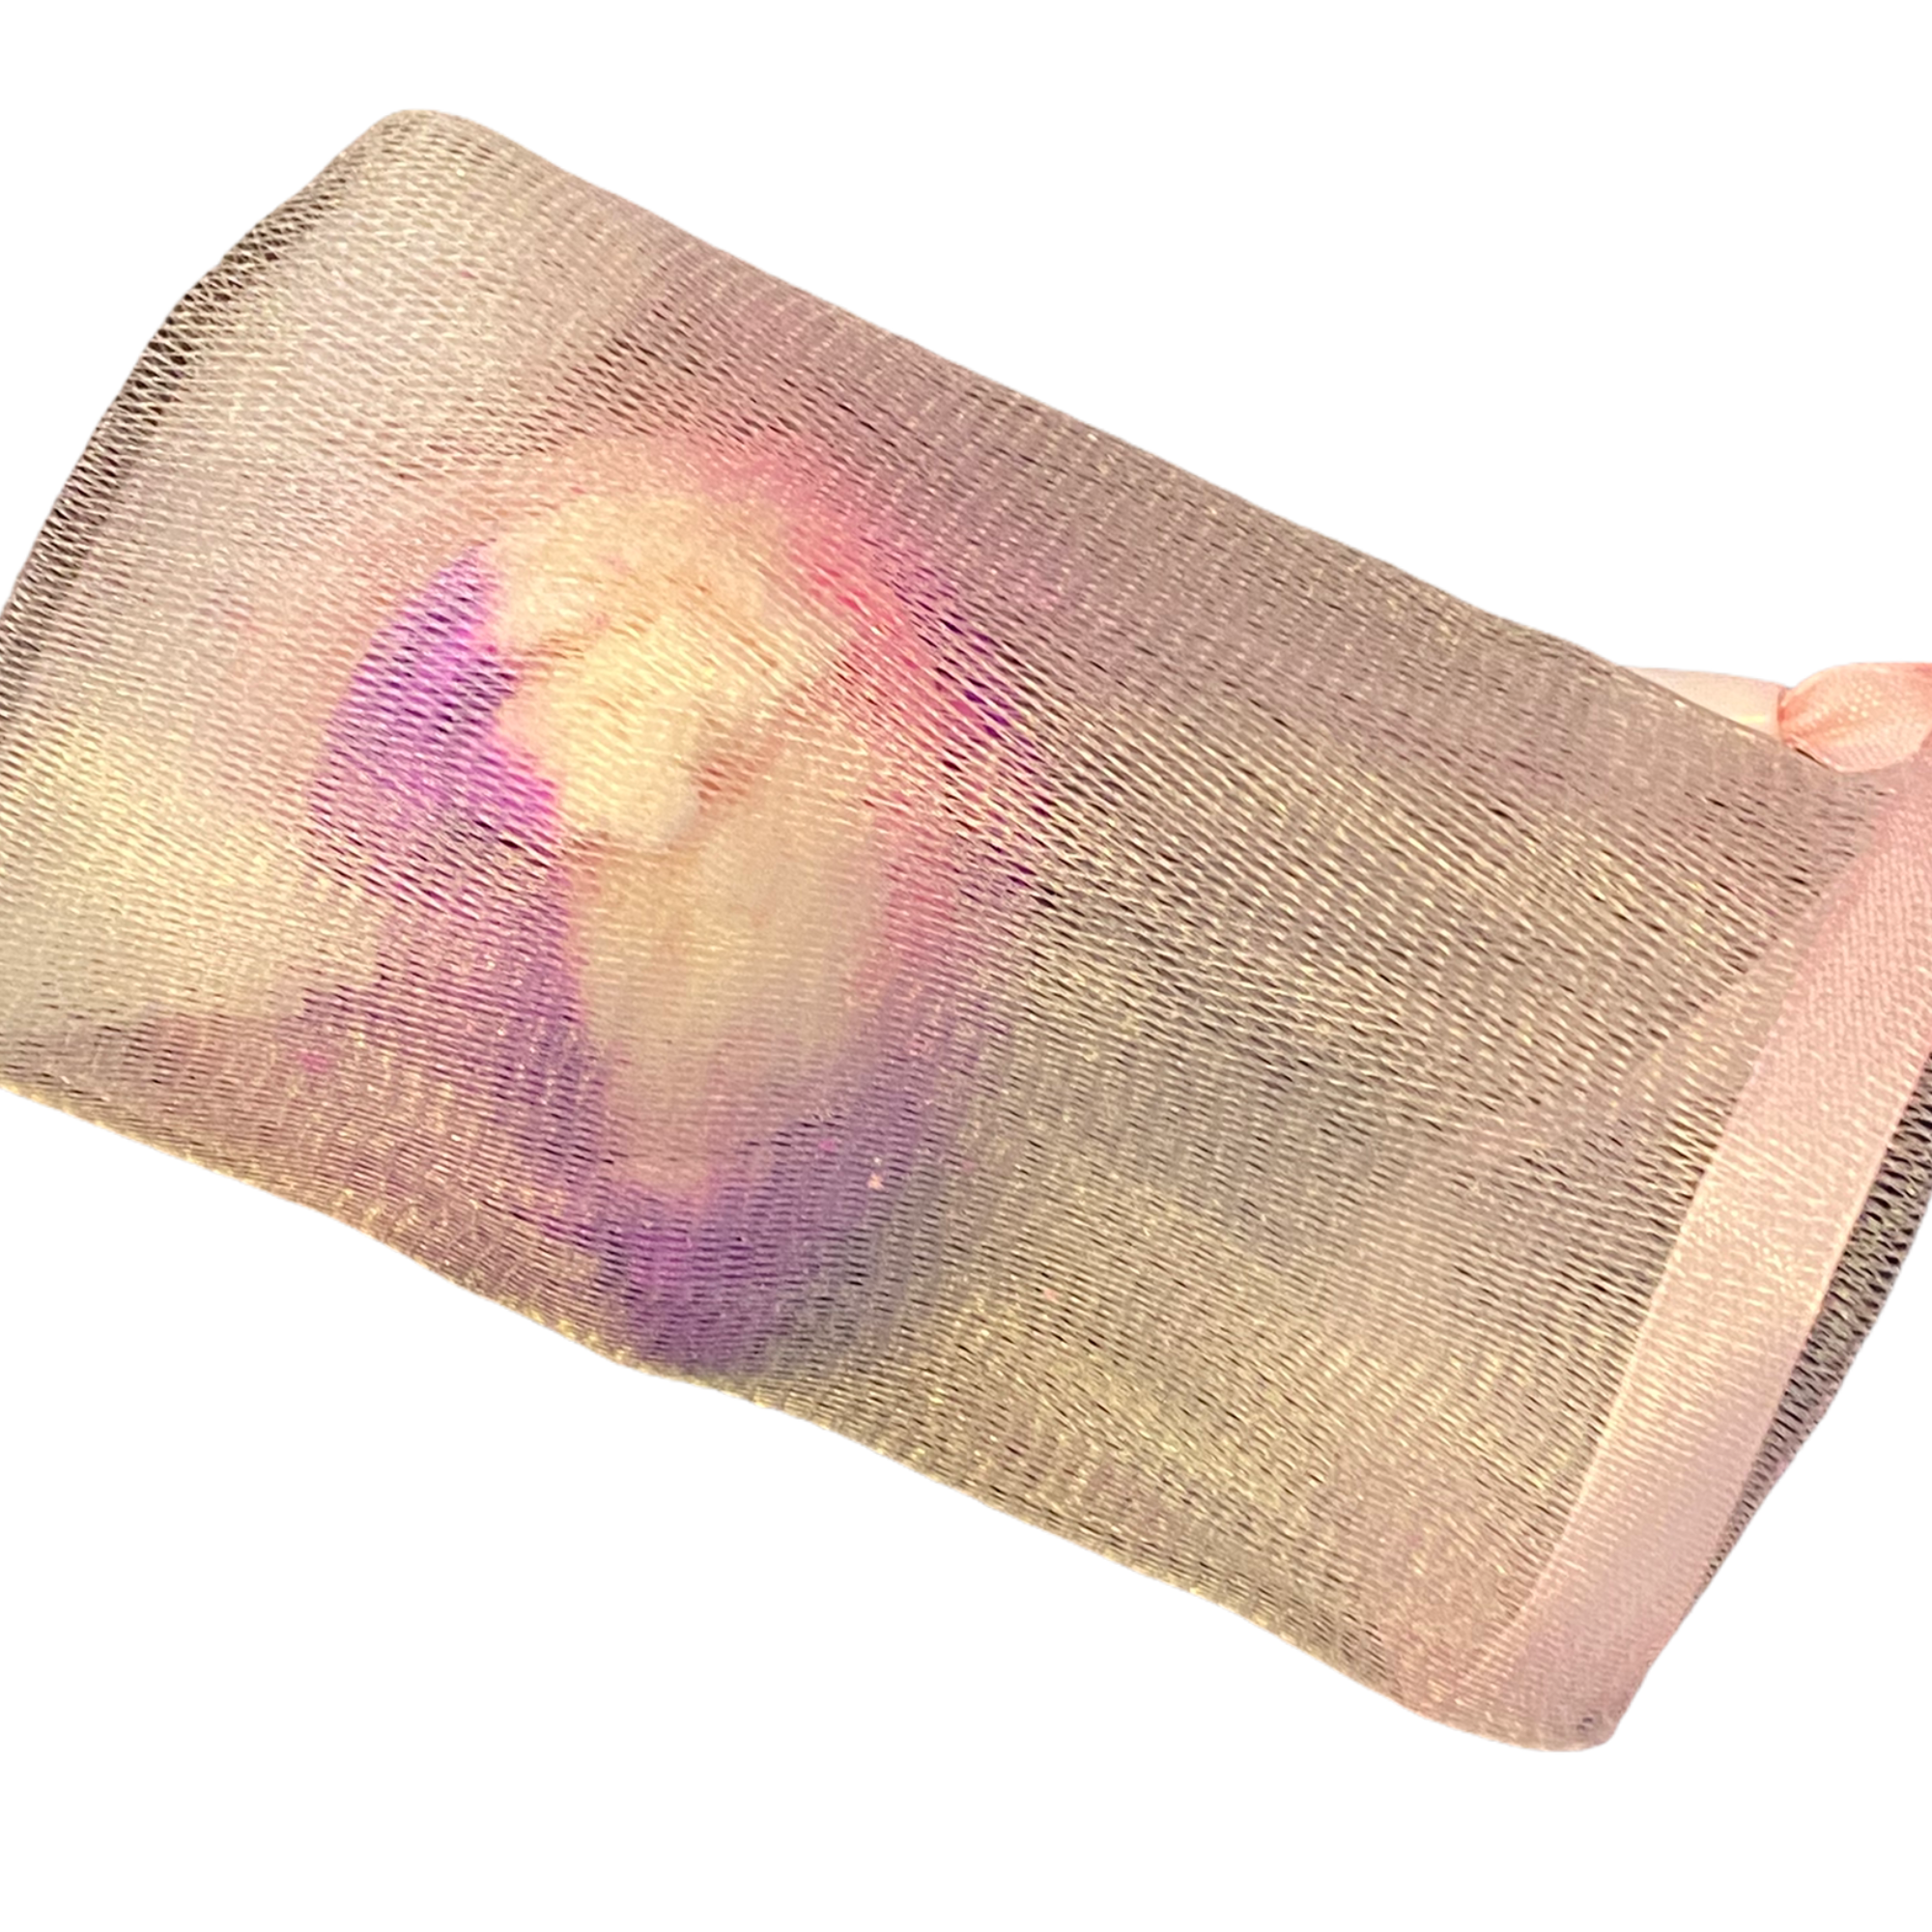 bubble scoop in bag